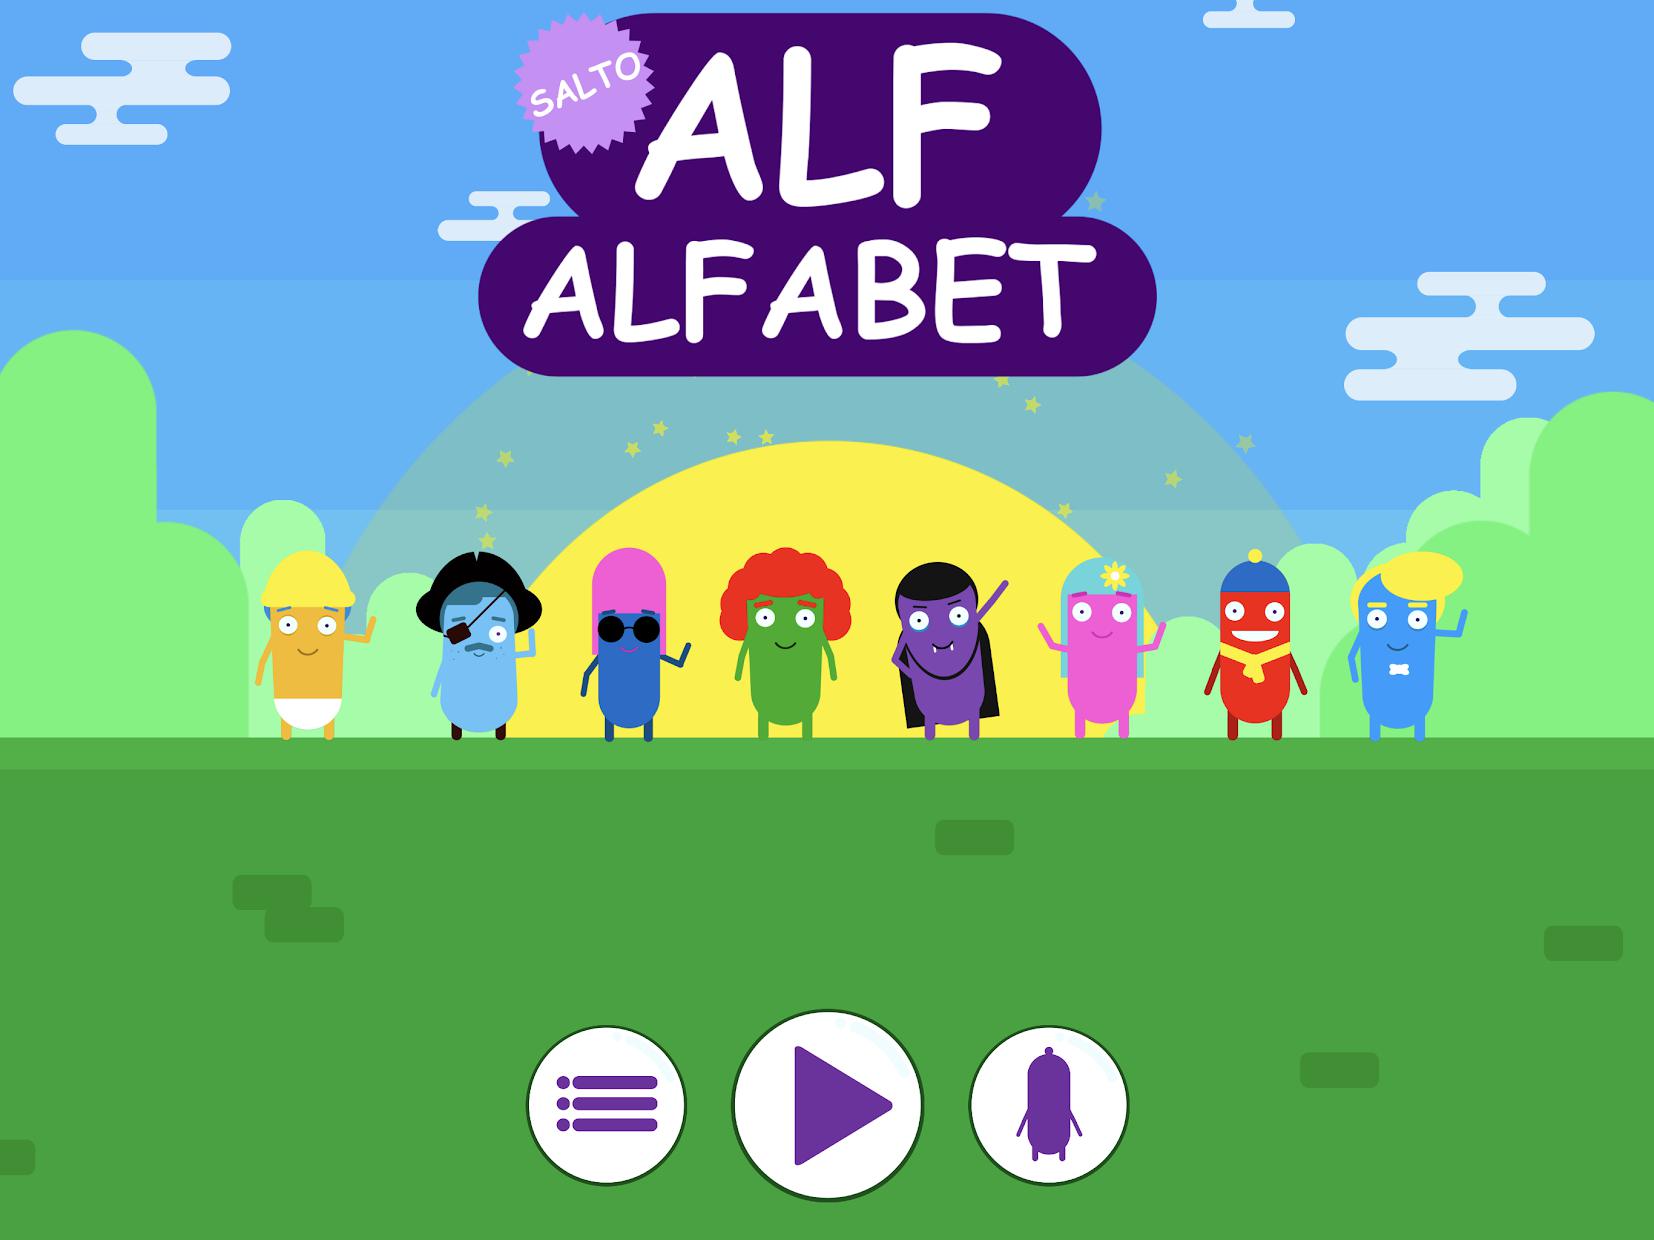 Alf Alfabet - Salto